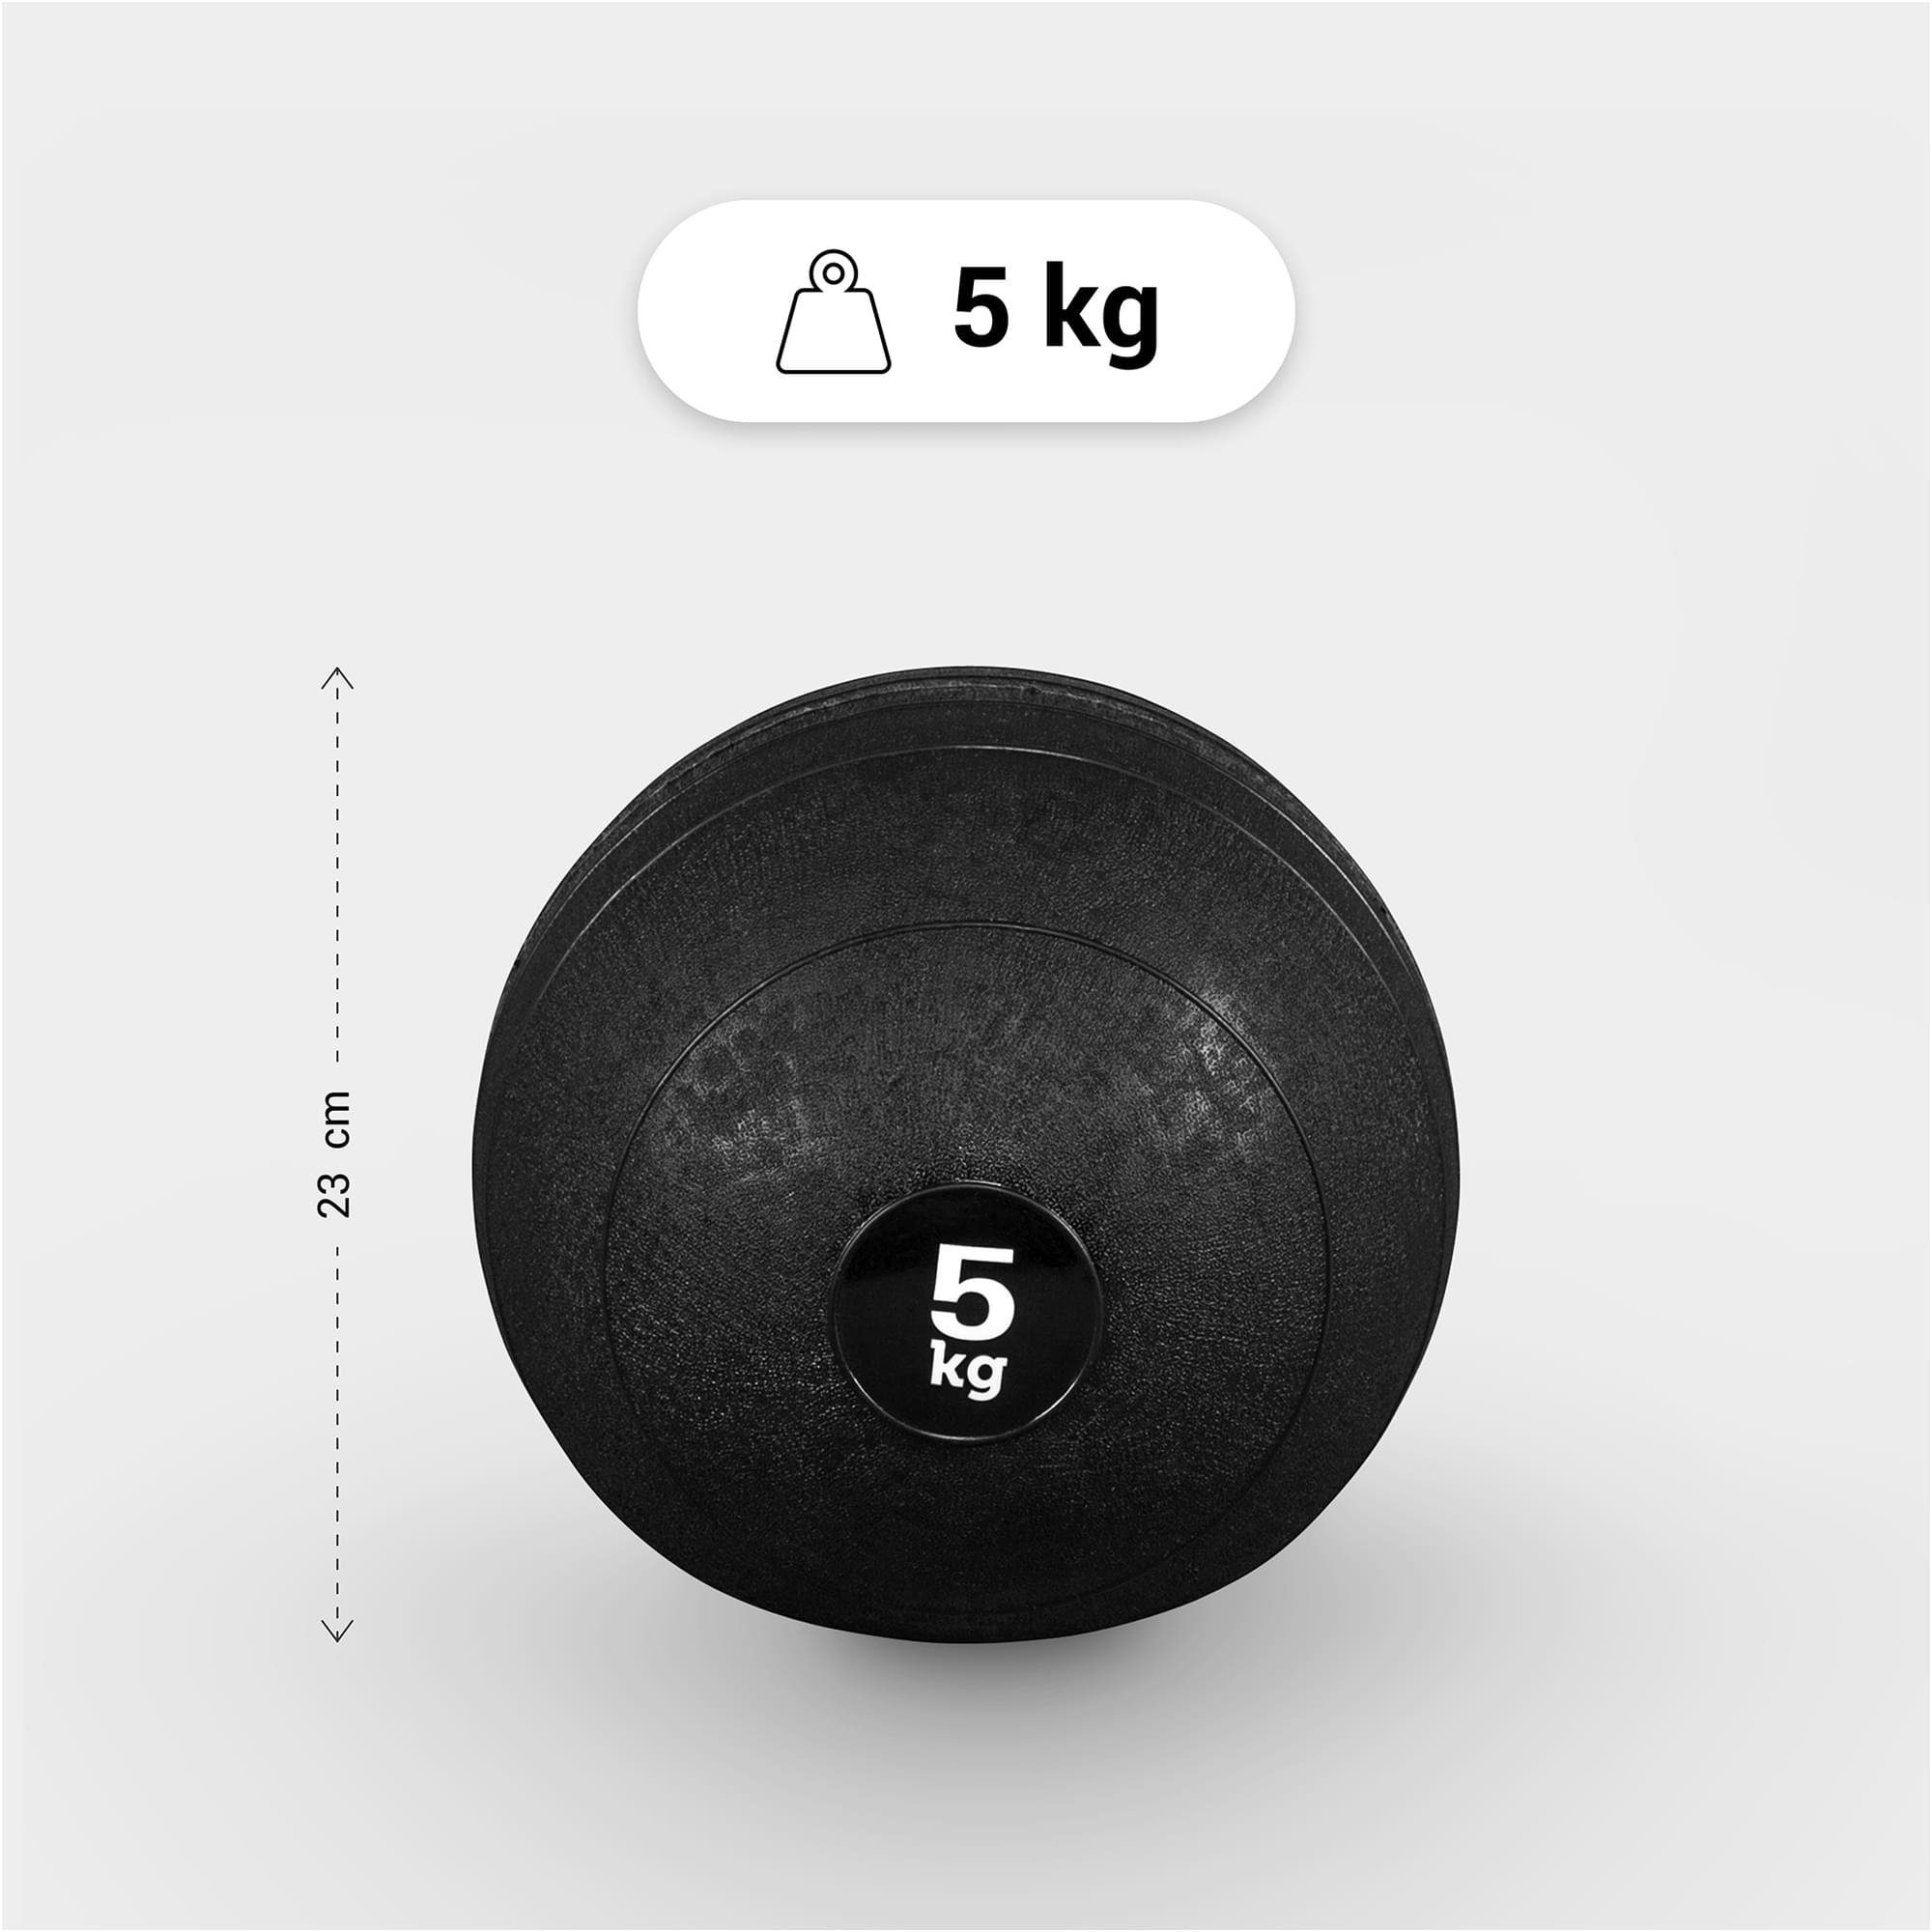 mit Set Griffiger 15kg 3kg, 7kg, Einzeln/Set, 15kg, 5kg, 20kg, 10kg, GORILLA Medizinball Oberfläche SPORTS